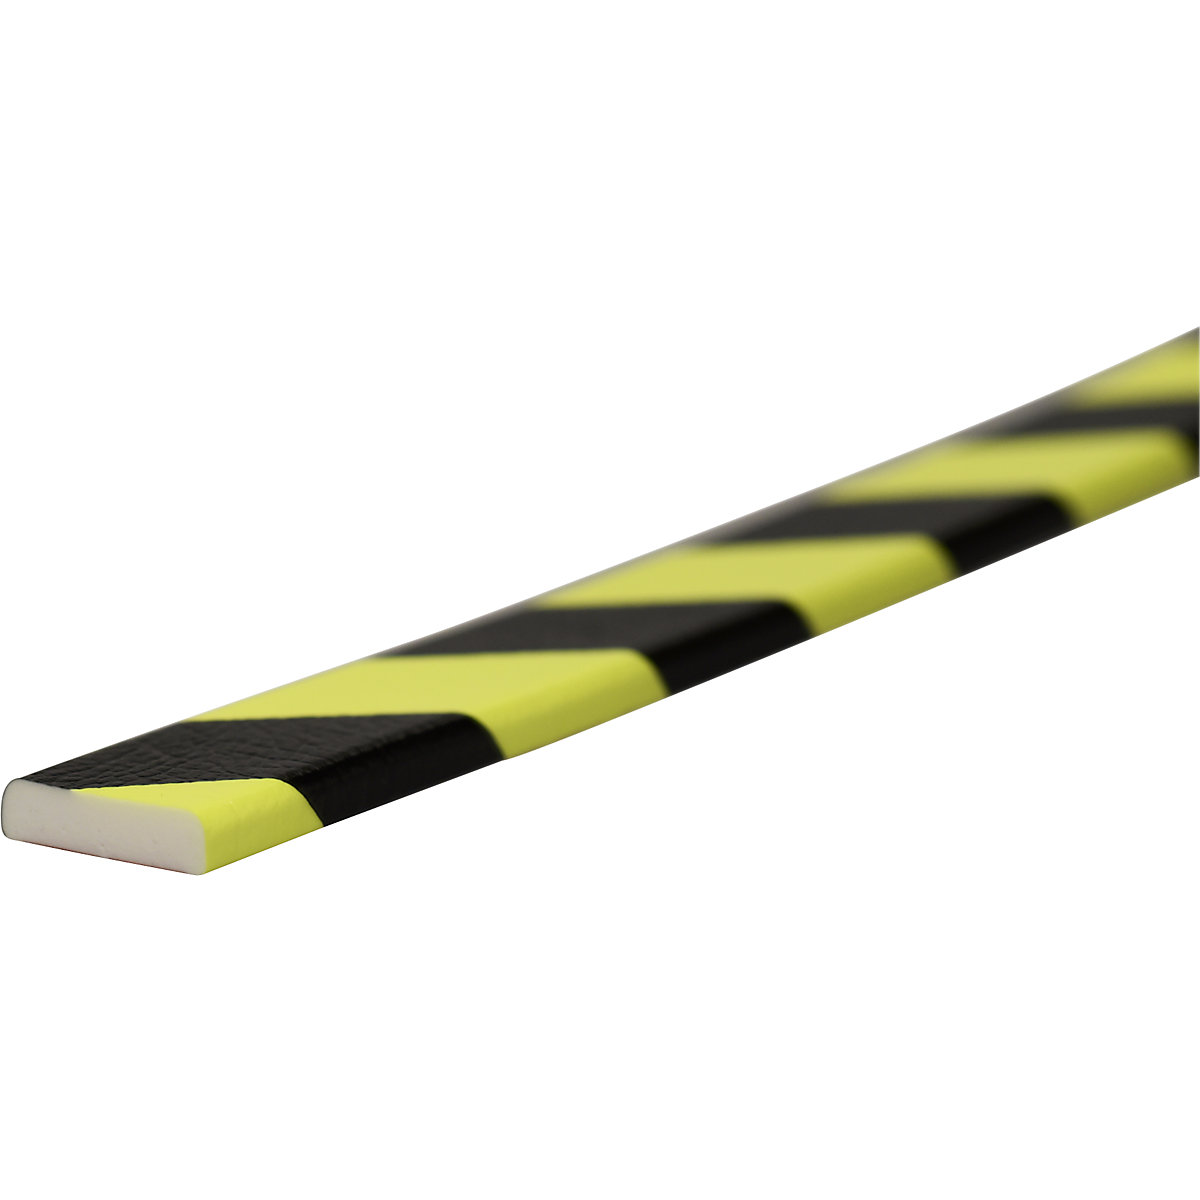 Protection des surfaces Knuffi® – SHG, type F, 1 rouleau de 50 m, noir/fluorescent